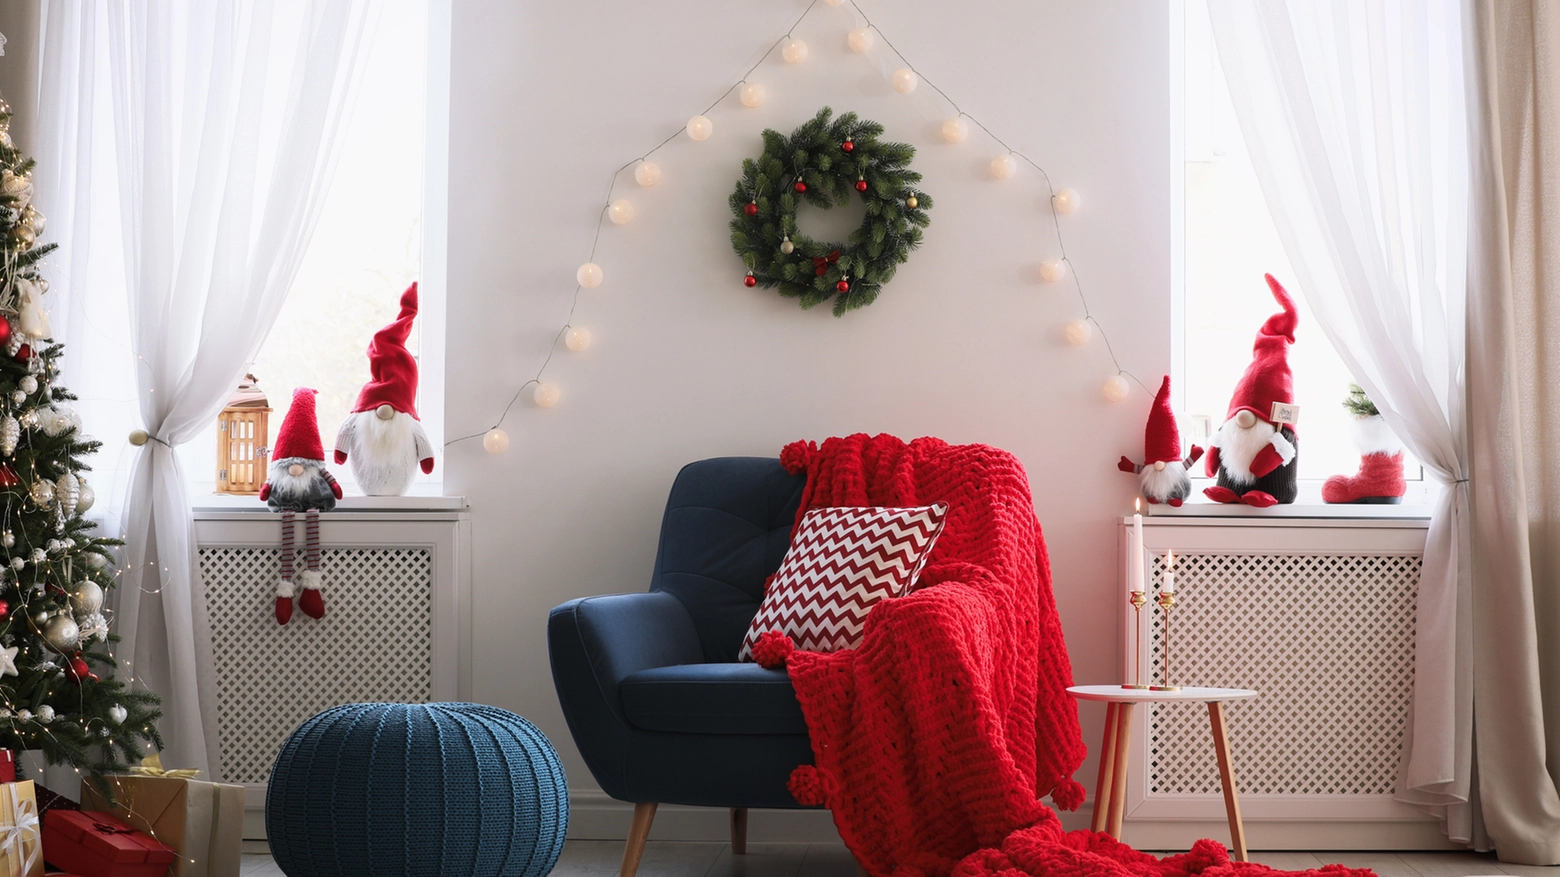 Tutti i consigli utili per arredare e decorare la casa per Natale (iStock Photo)